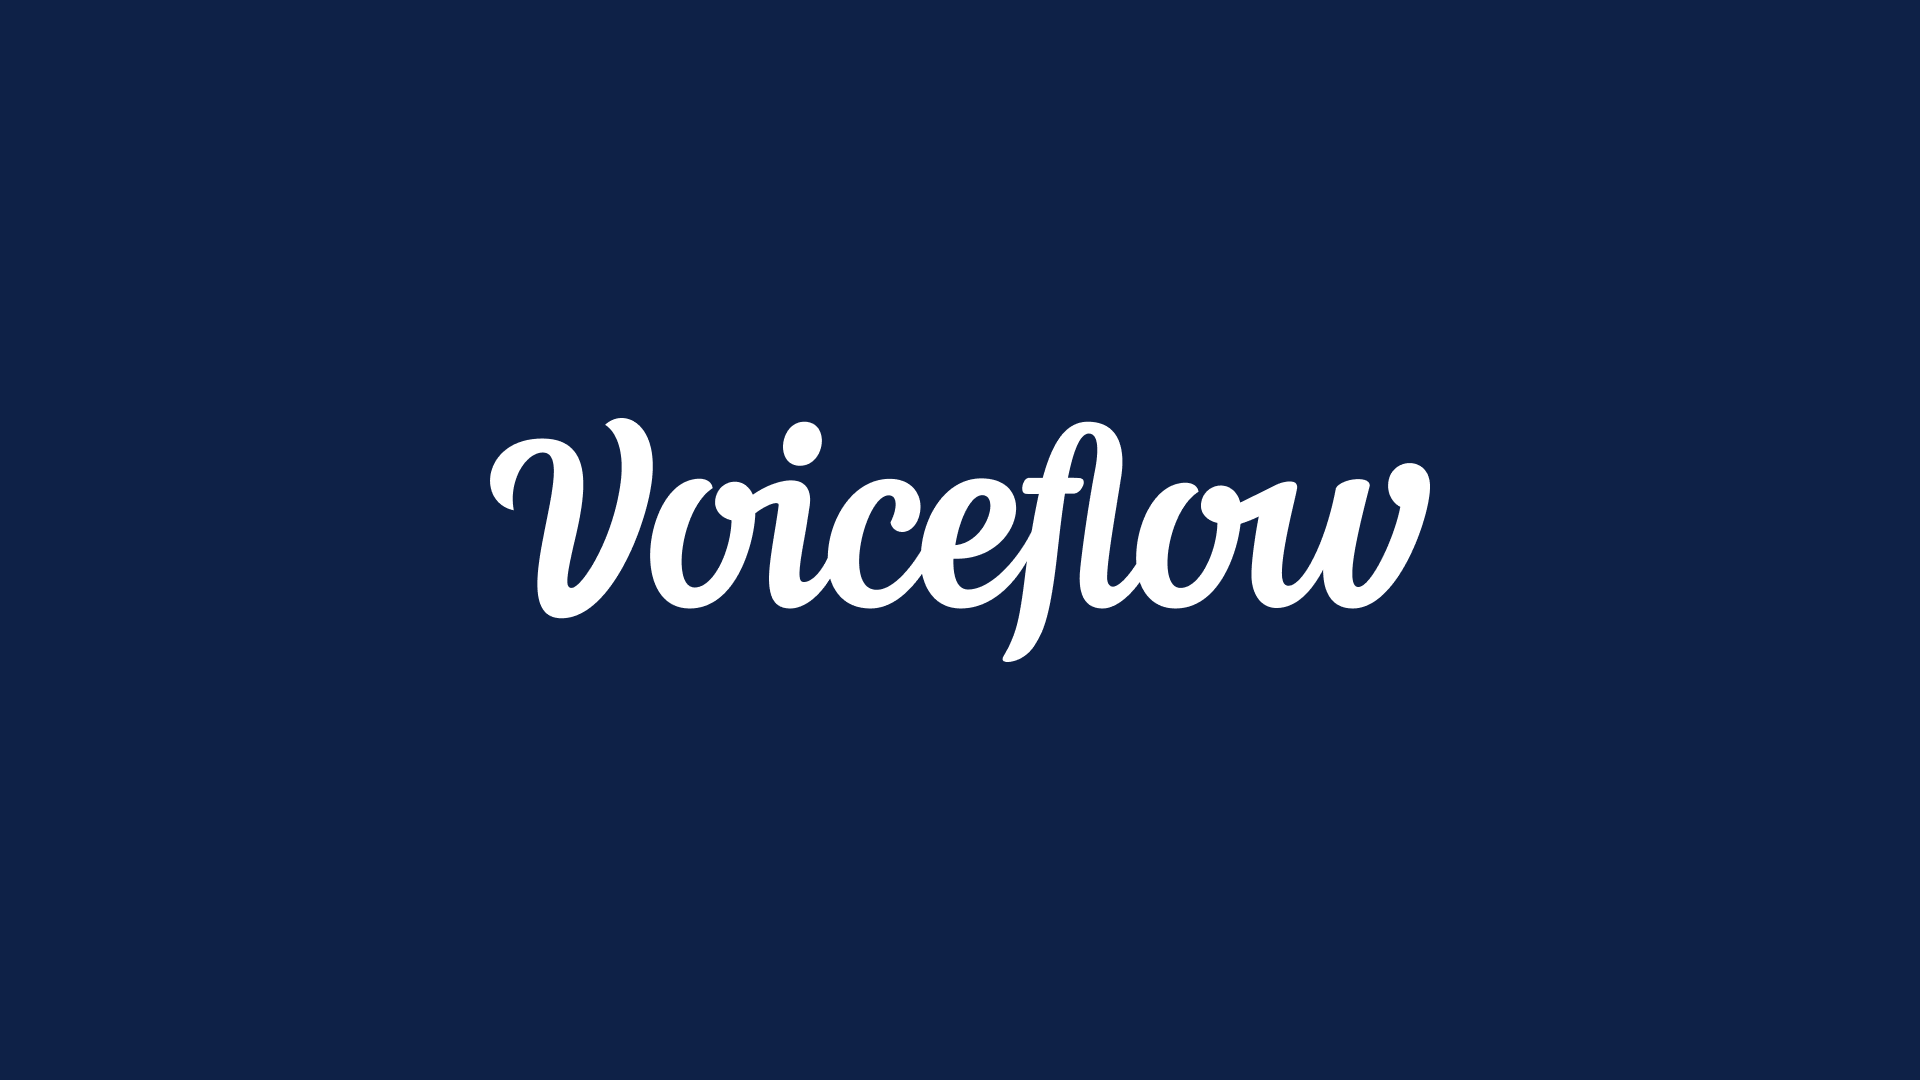 voiceflow logo